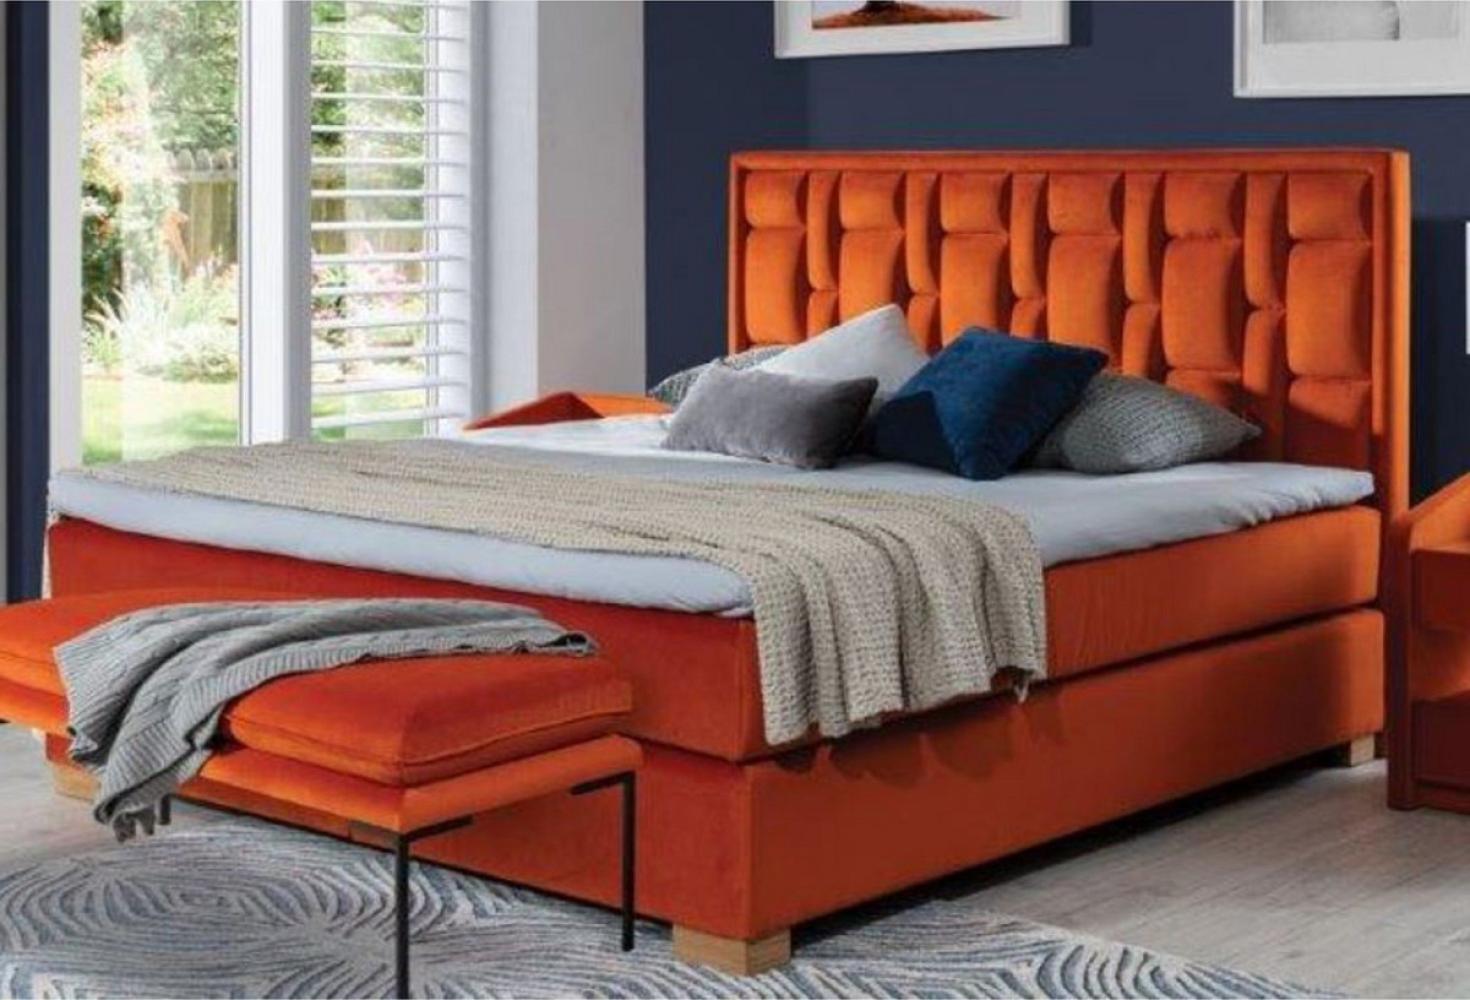 Casa Padrino Luxus Doppelbett Orange / Naturfarben - Modernes Massivholz Bett mit Kopfteil und Matratze - Moderne Schlafzimmer Möbel - Luxus Kollektion Bild 1